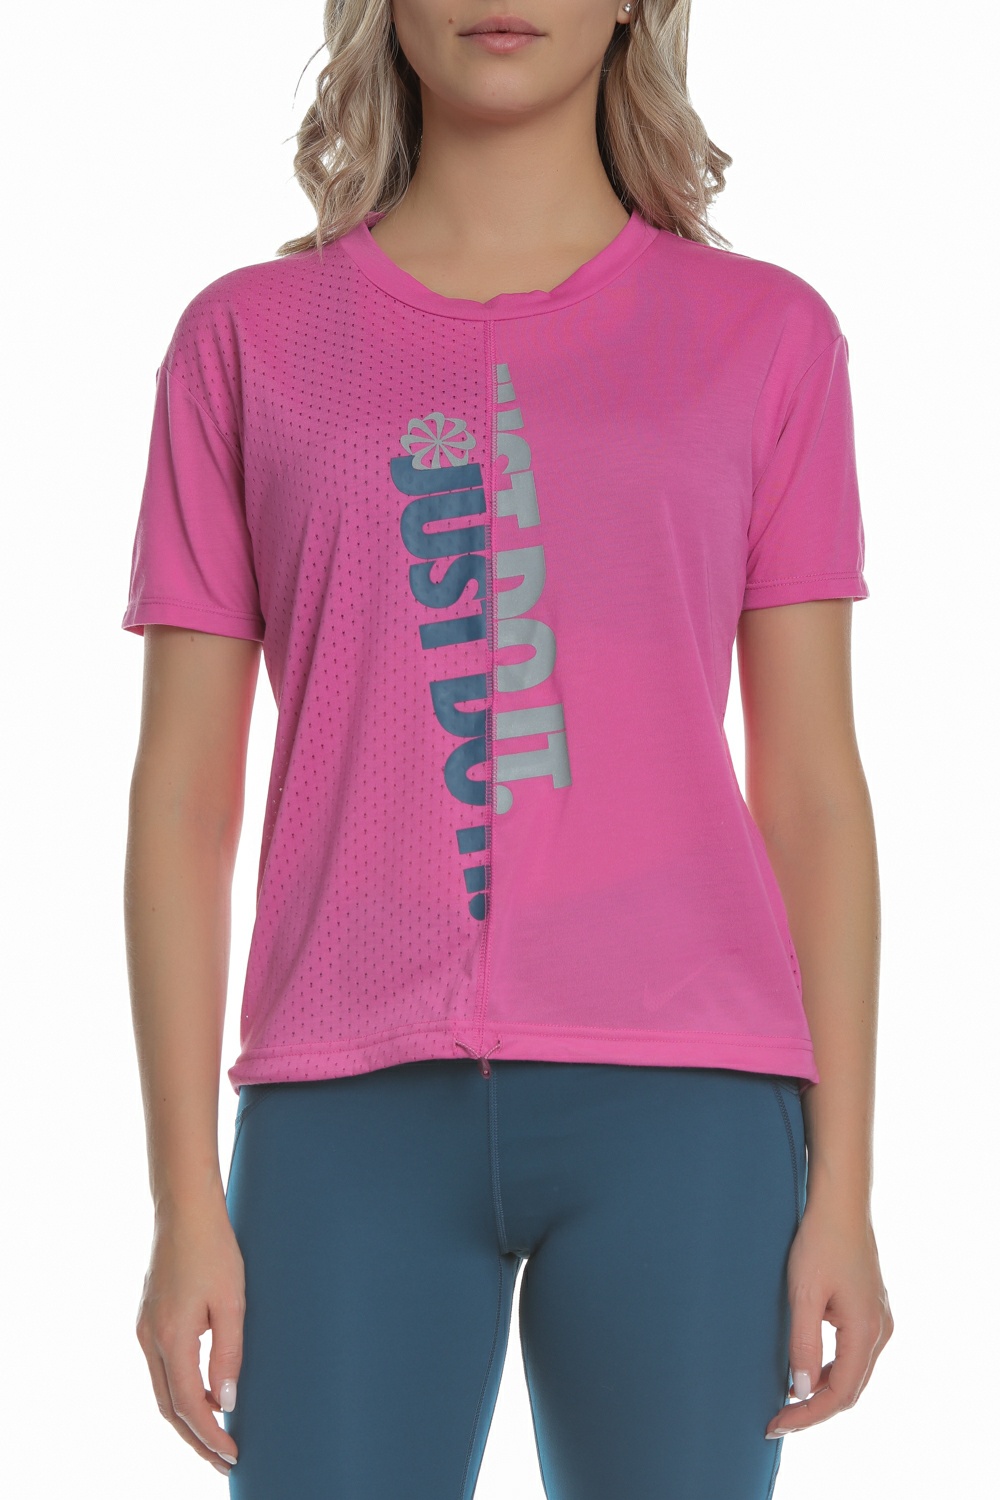 Γυναικεία/Ρούχα/Αθλητικά/T-shirt-Τοπ NIKE - Γυναικεία μπλούζα NIKE ICNCLSH TOP φούξια